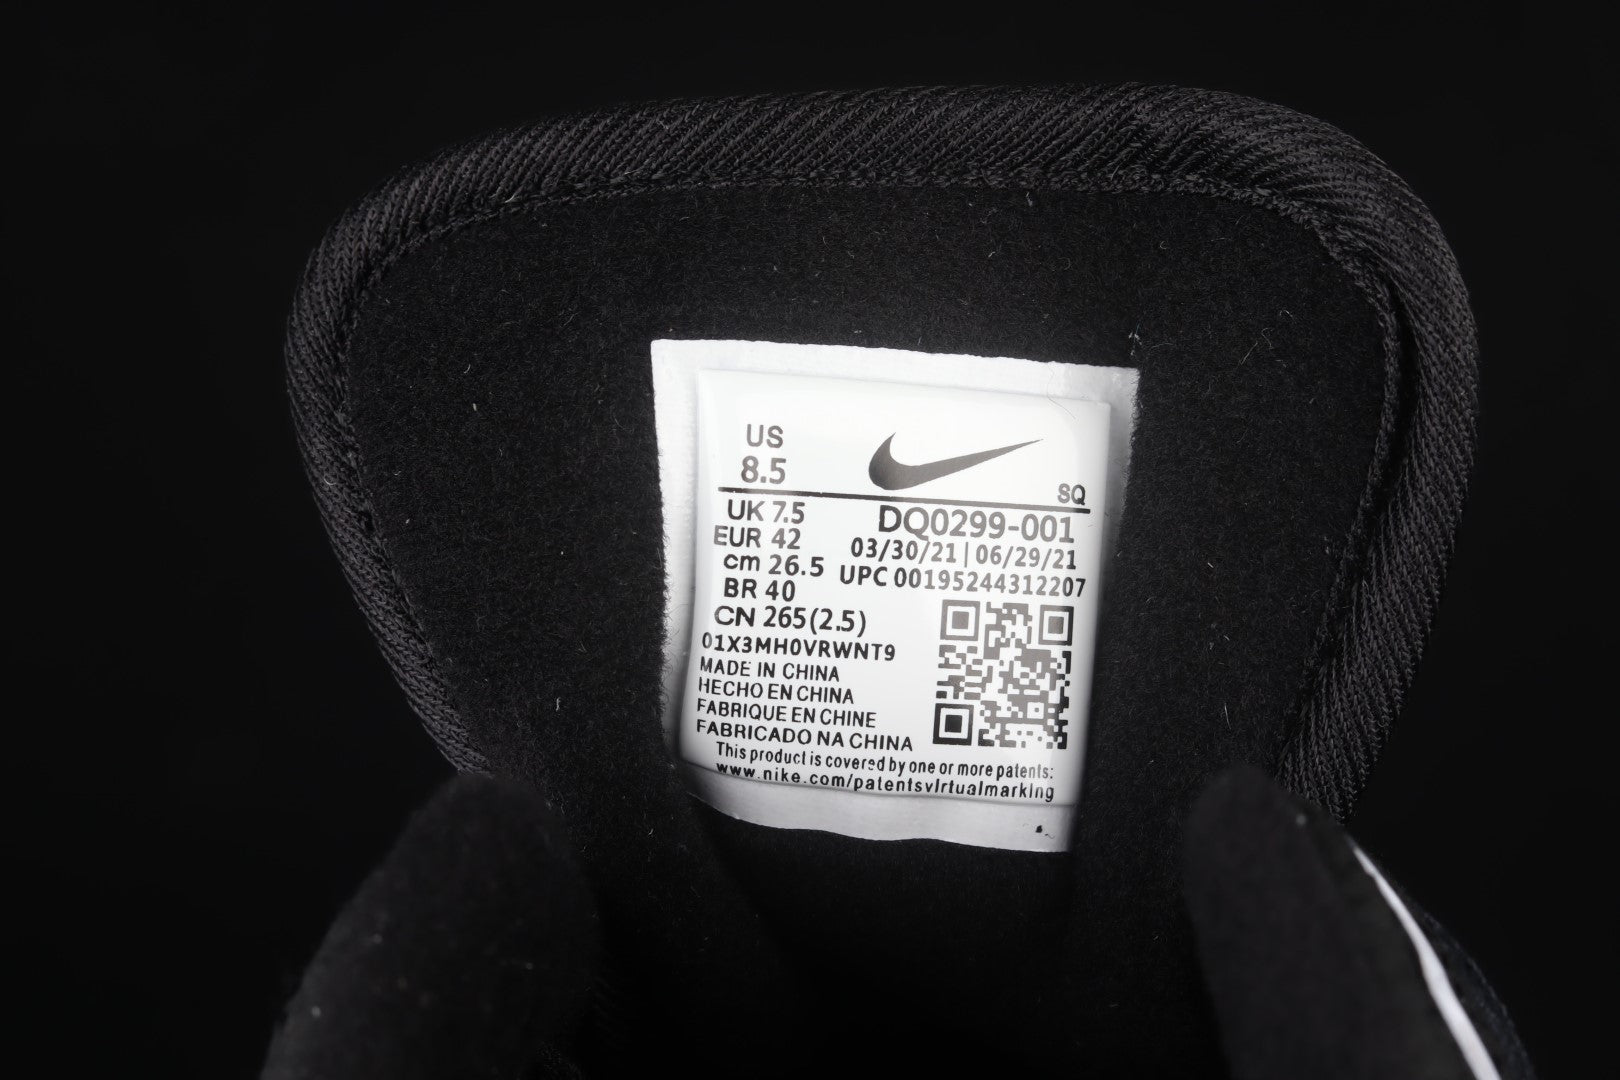 NikeMens Air Max 1 AM1 x Patta - Black